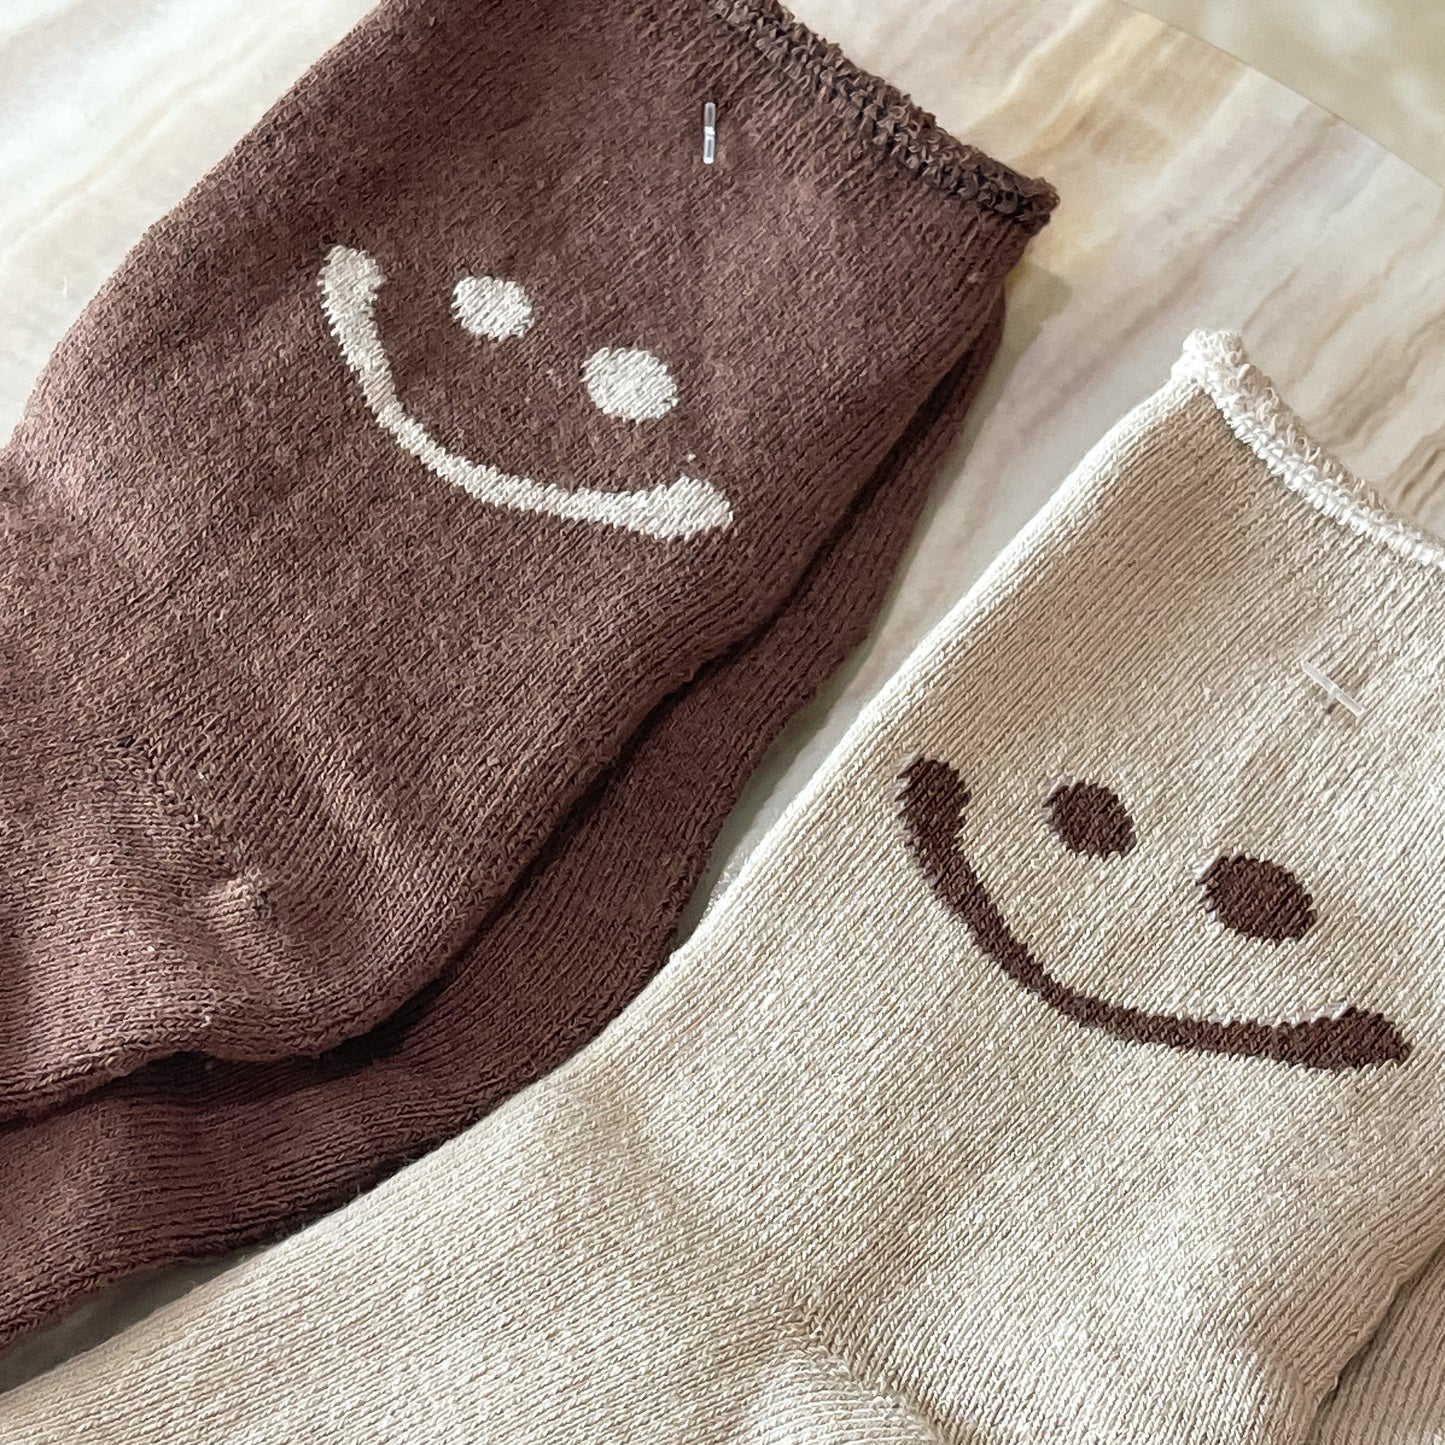 Neutral smile socks